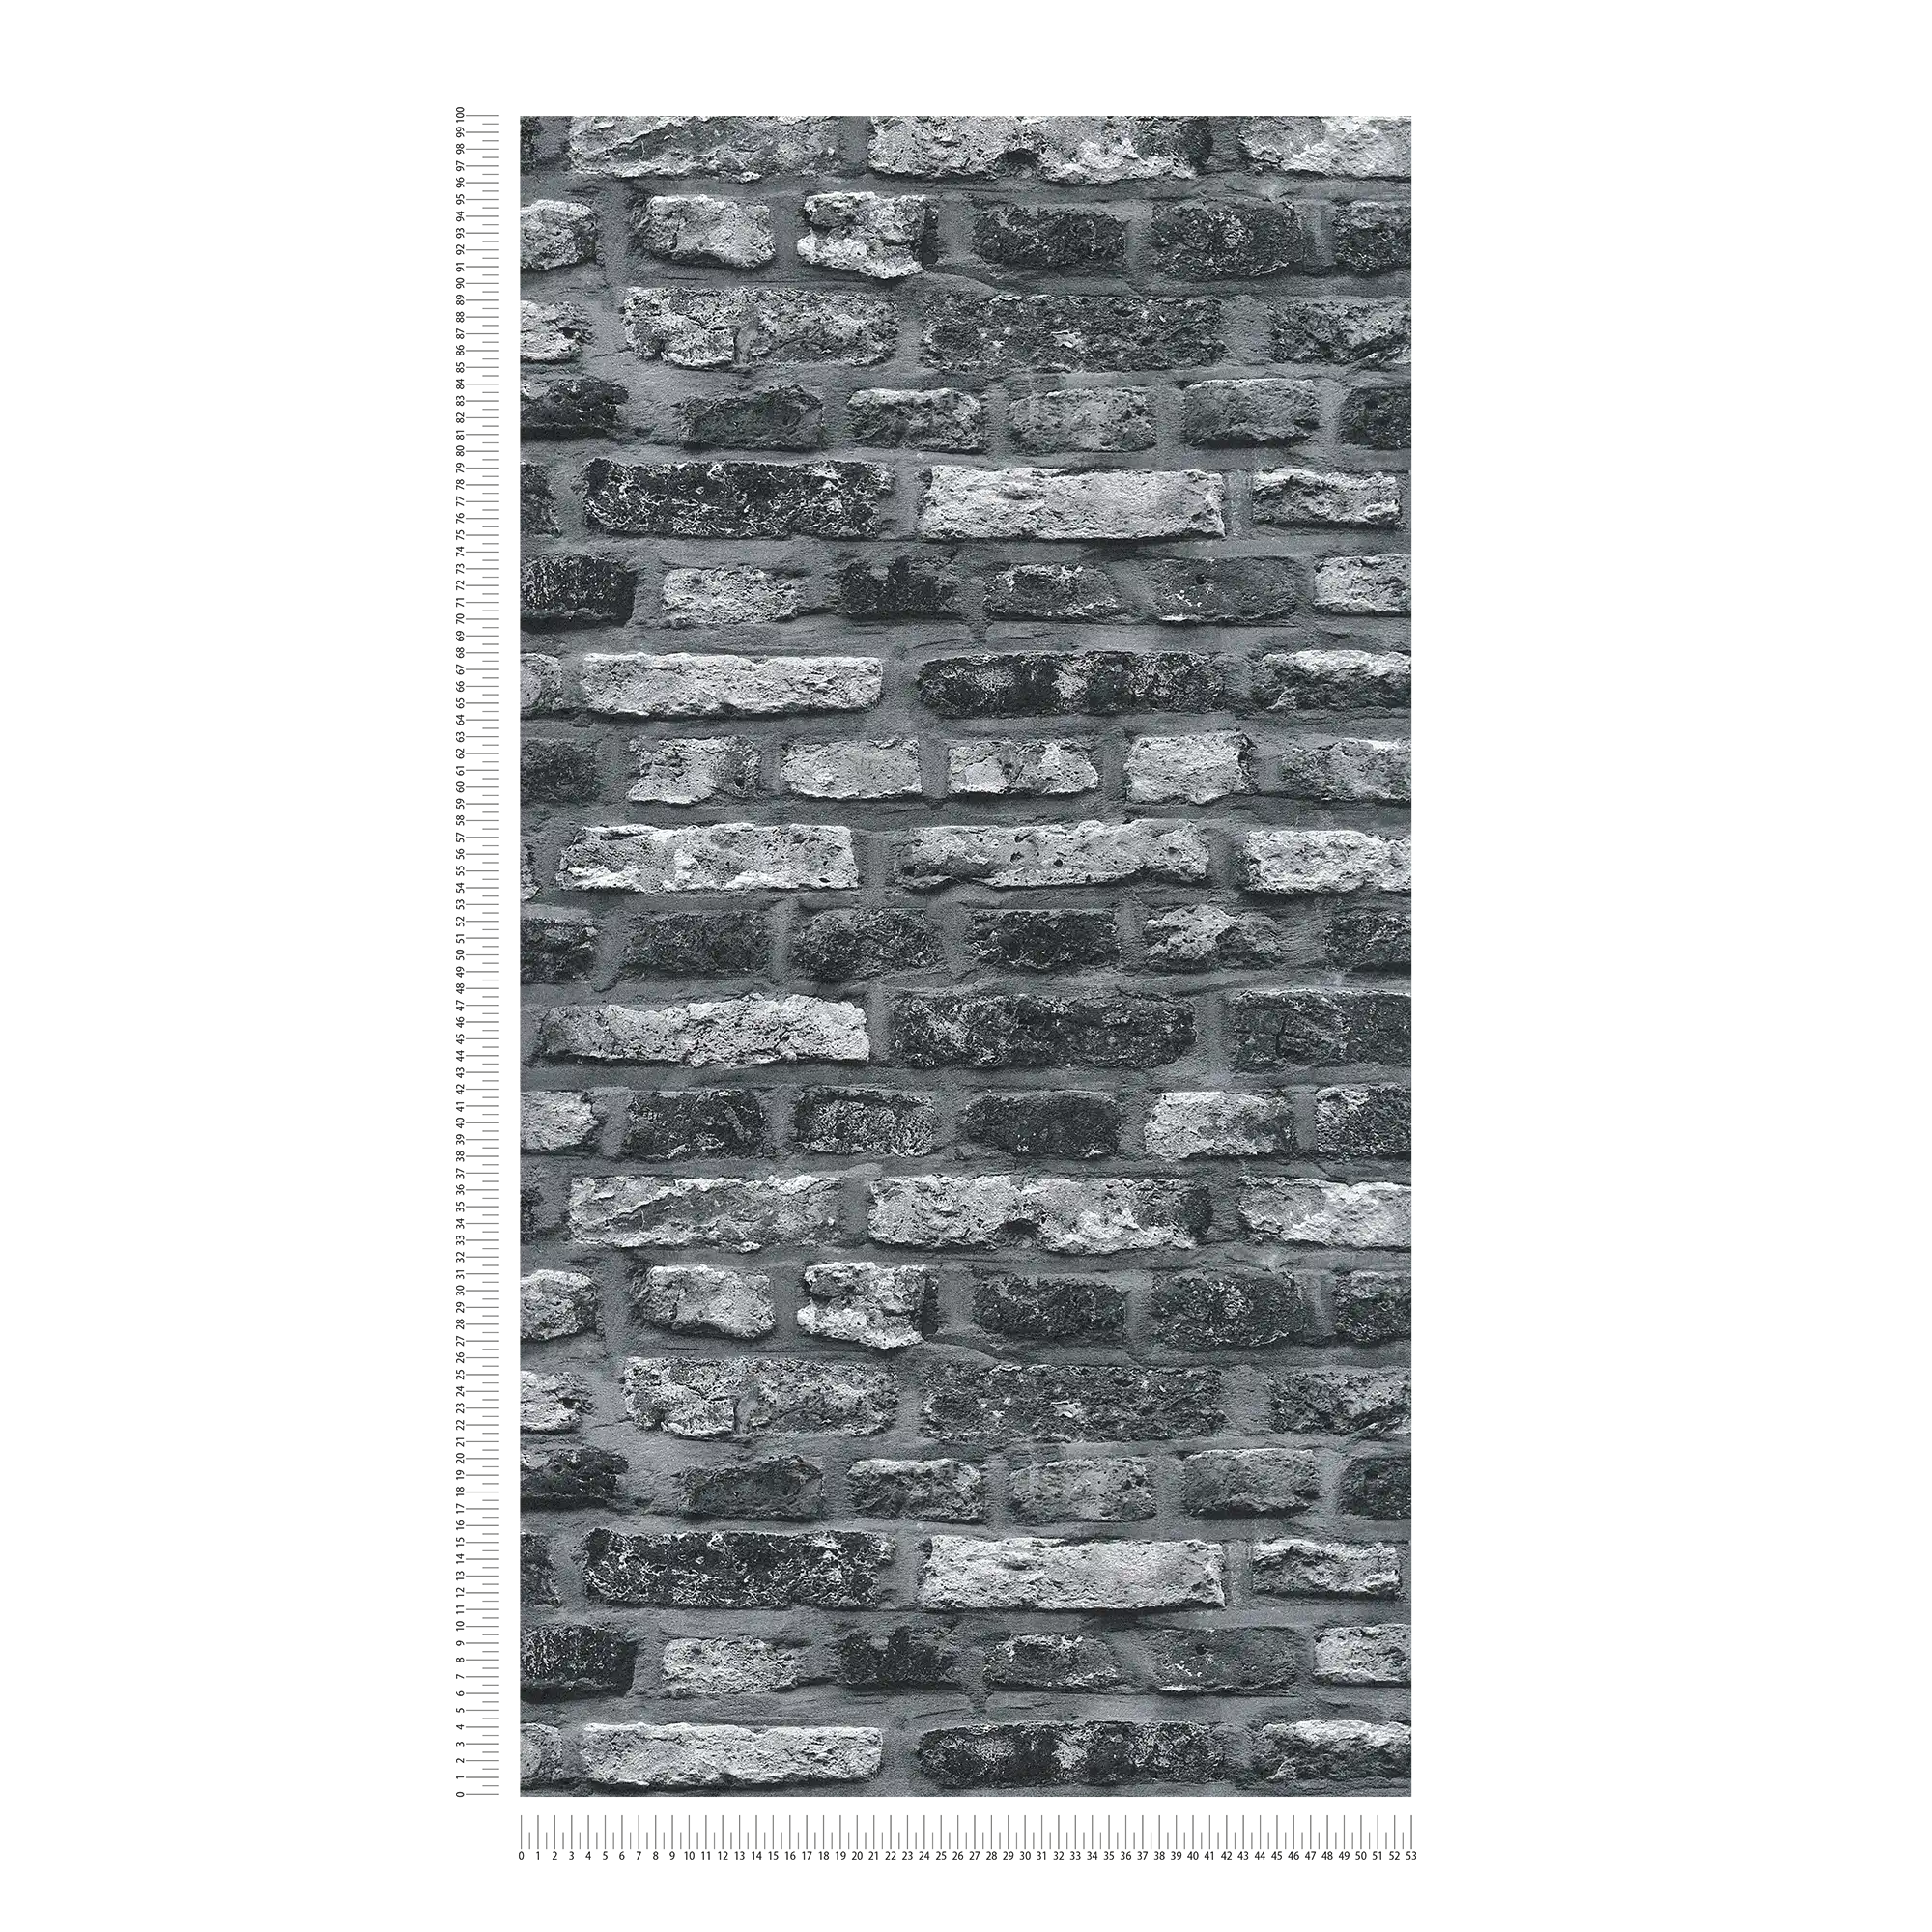             Papel pintado no tejido con aspecto de piedra, ladrillo oscuro - gris, negro
        